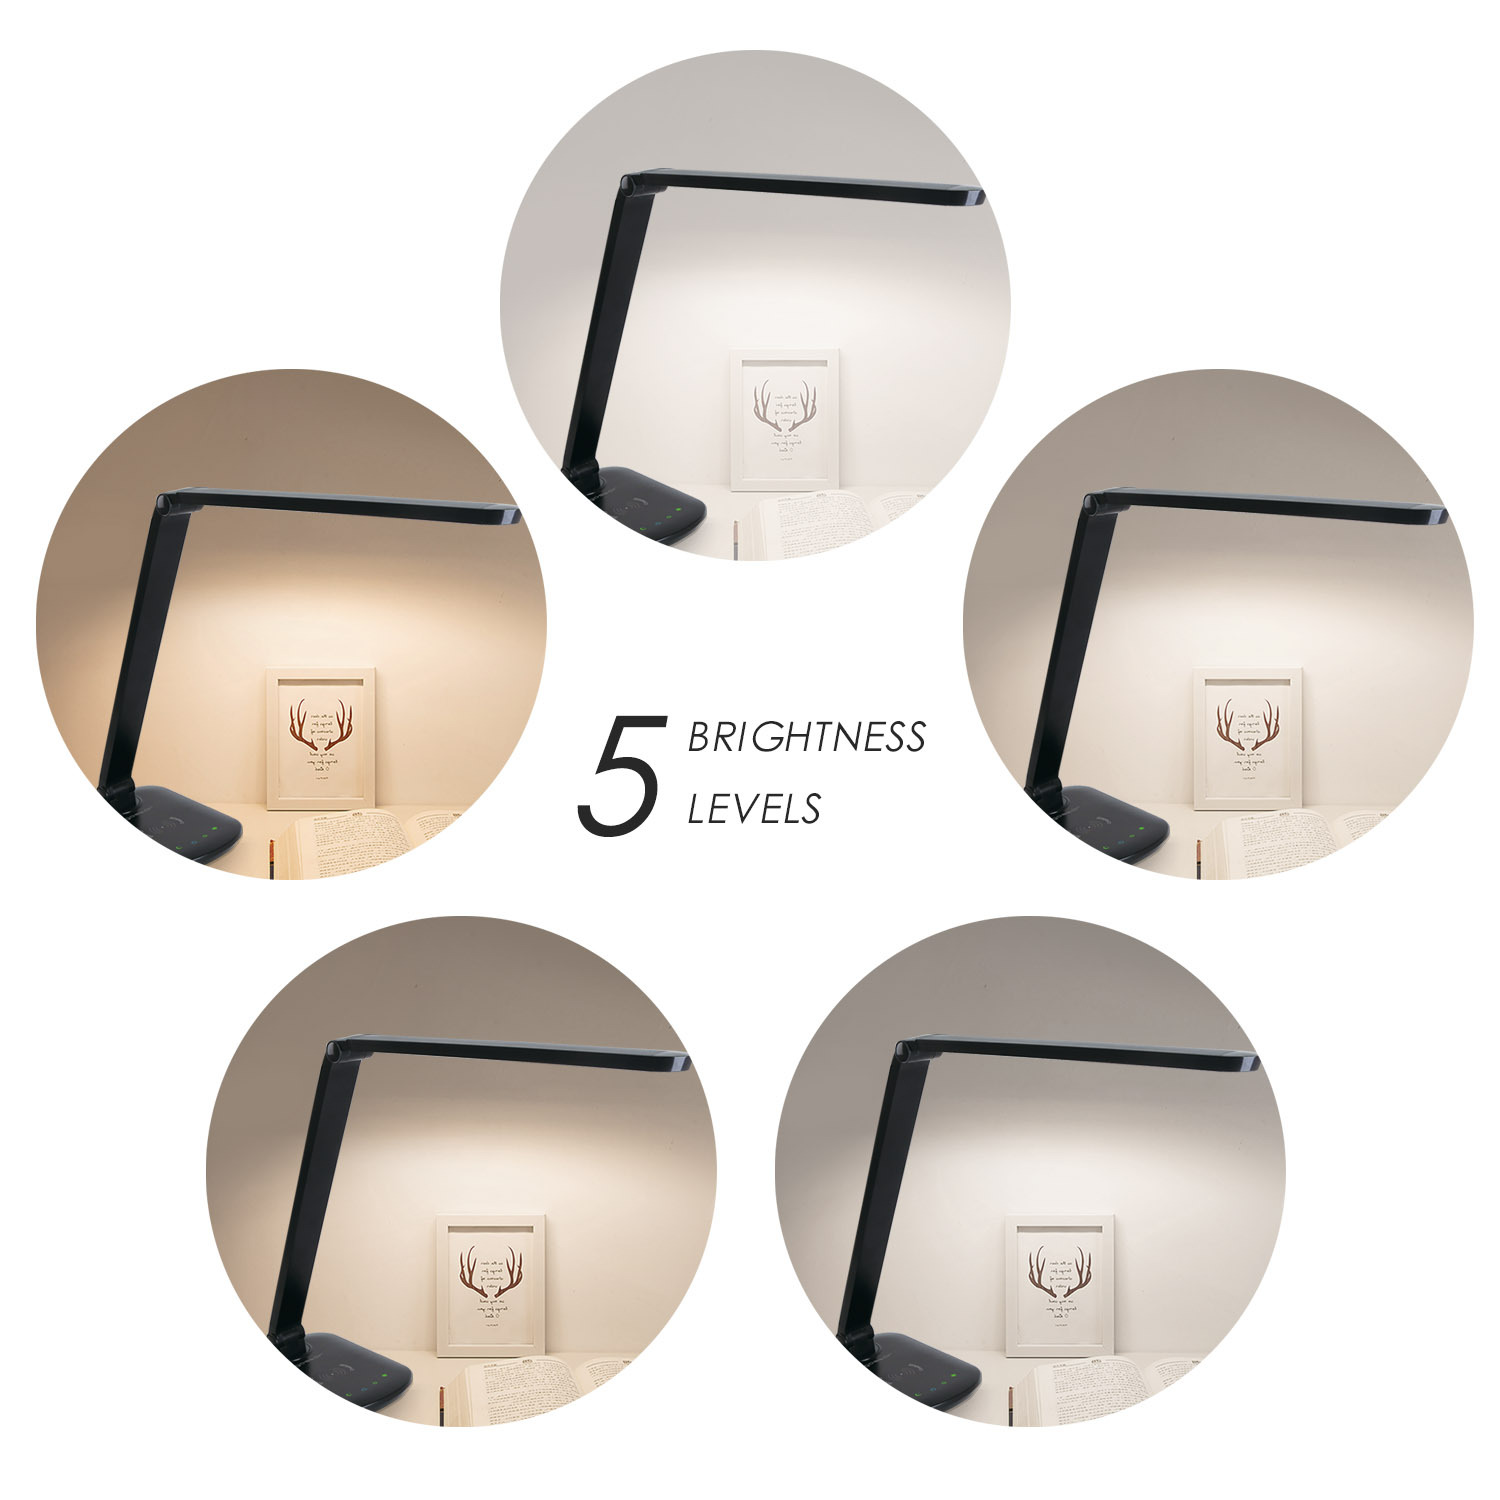 Aigostar Tokyo - LED bureaulamp - Dimbaar - USB oplaadpoort - Draadloos opladen - Zwart